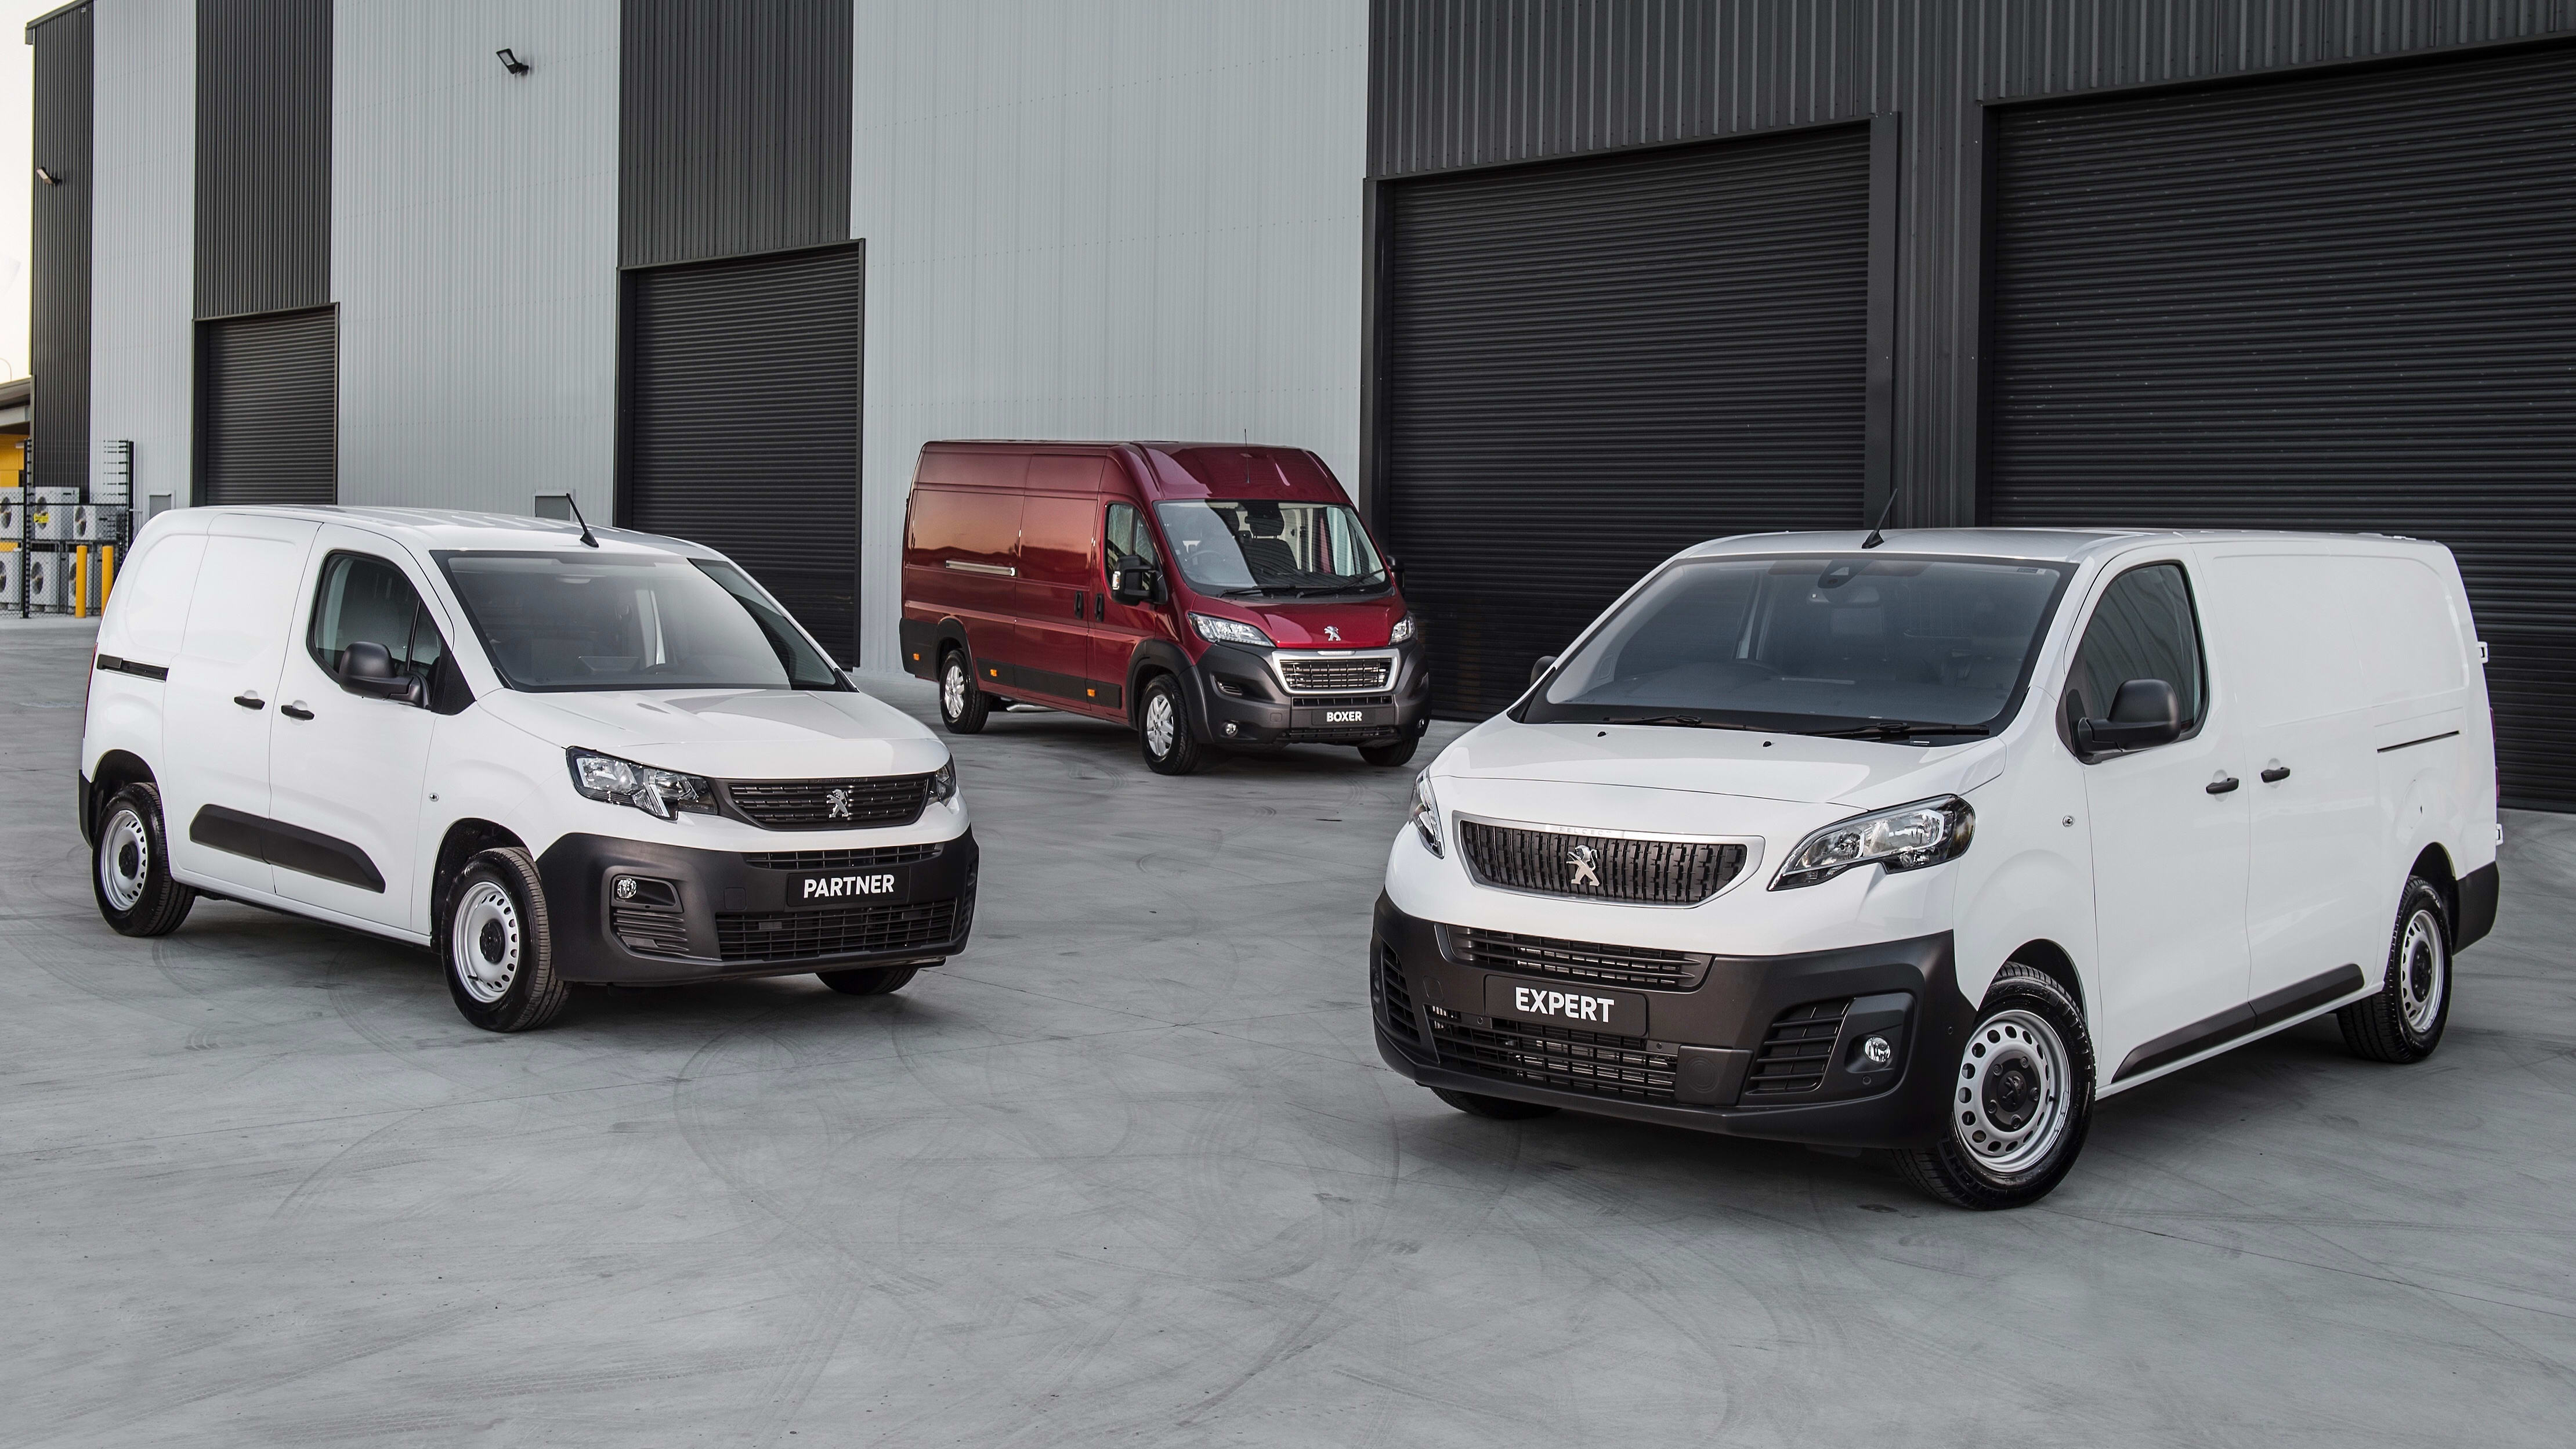 Peugeot Expert News: New Models, Recalls - Drive